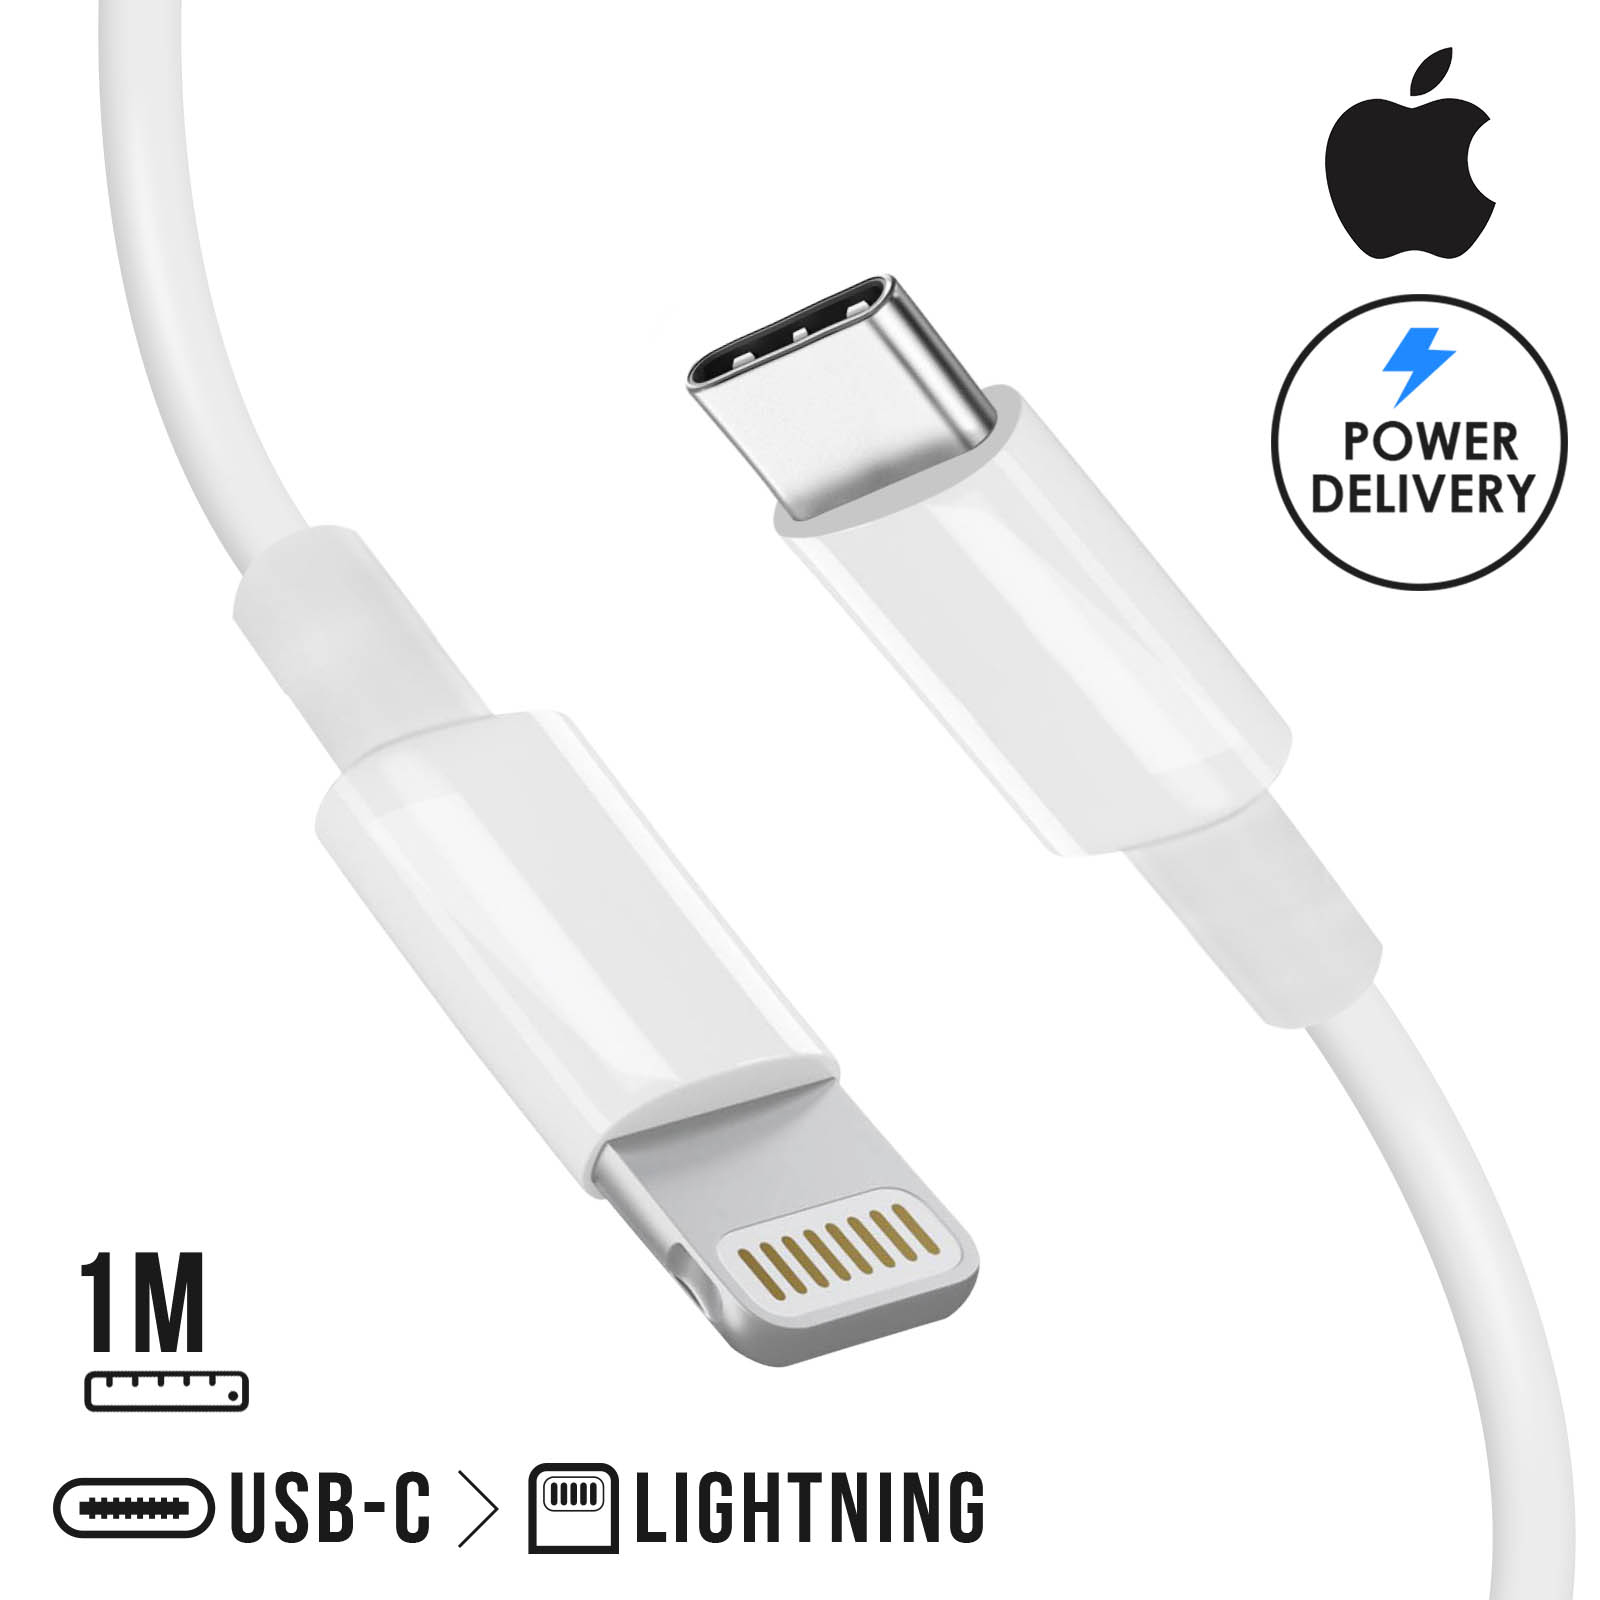 Cable Iphone Original de Charge USB-C vers Lightning Apple pour